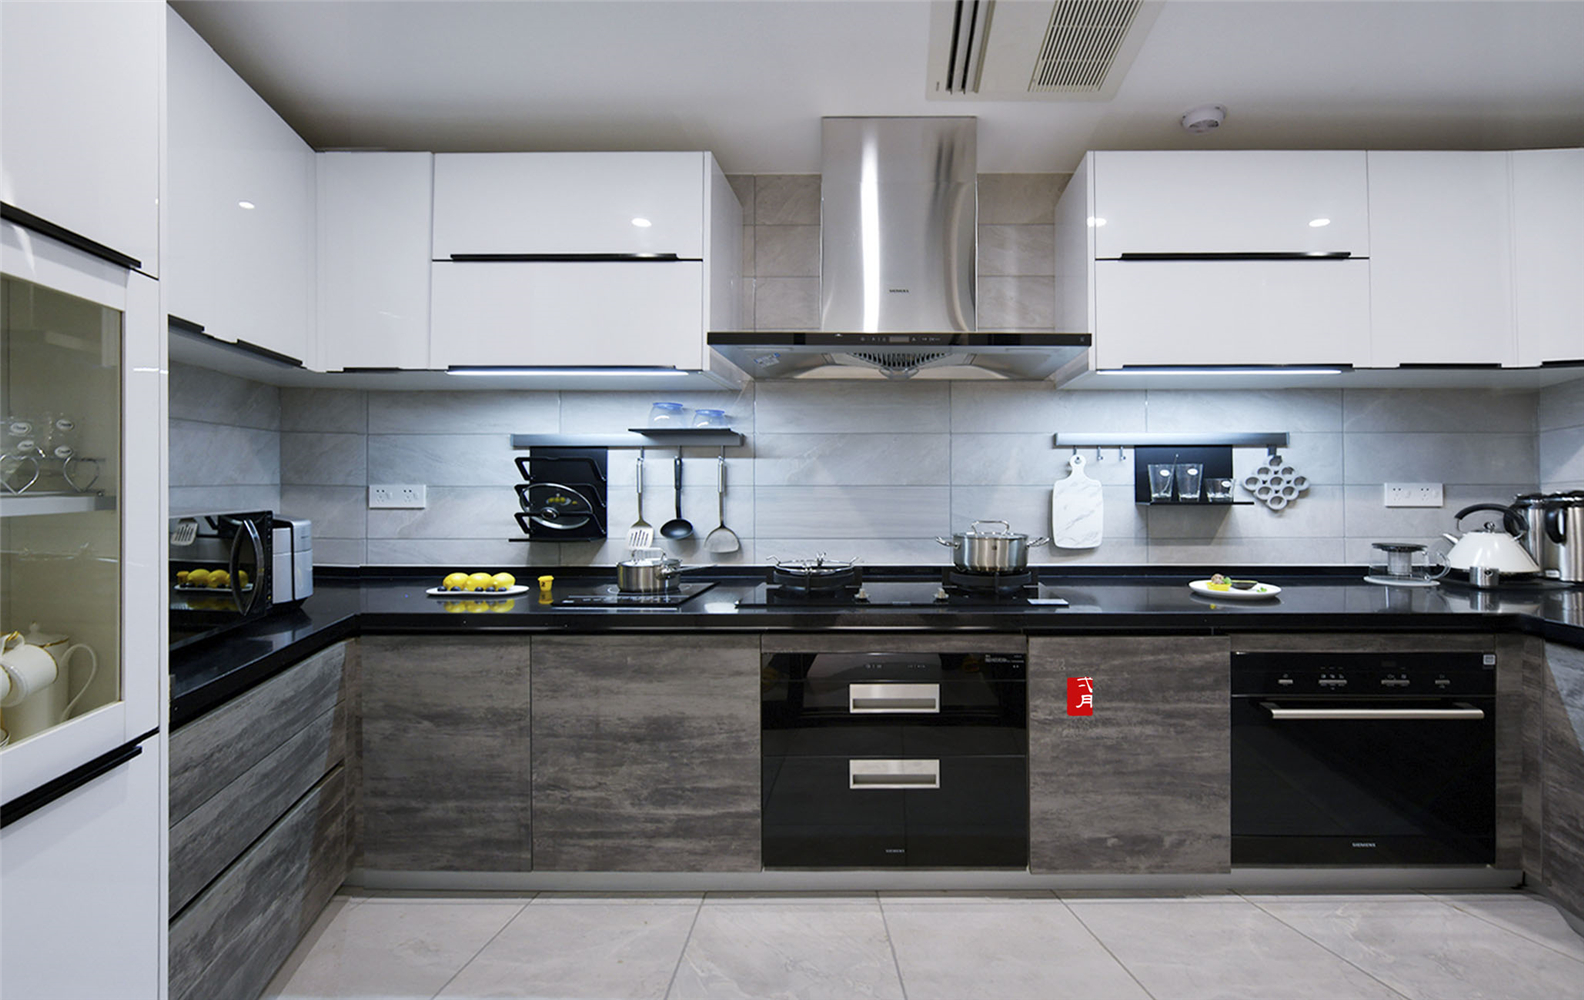 30平大厨房设计效果图图片